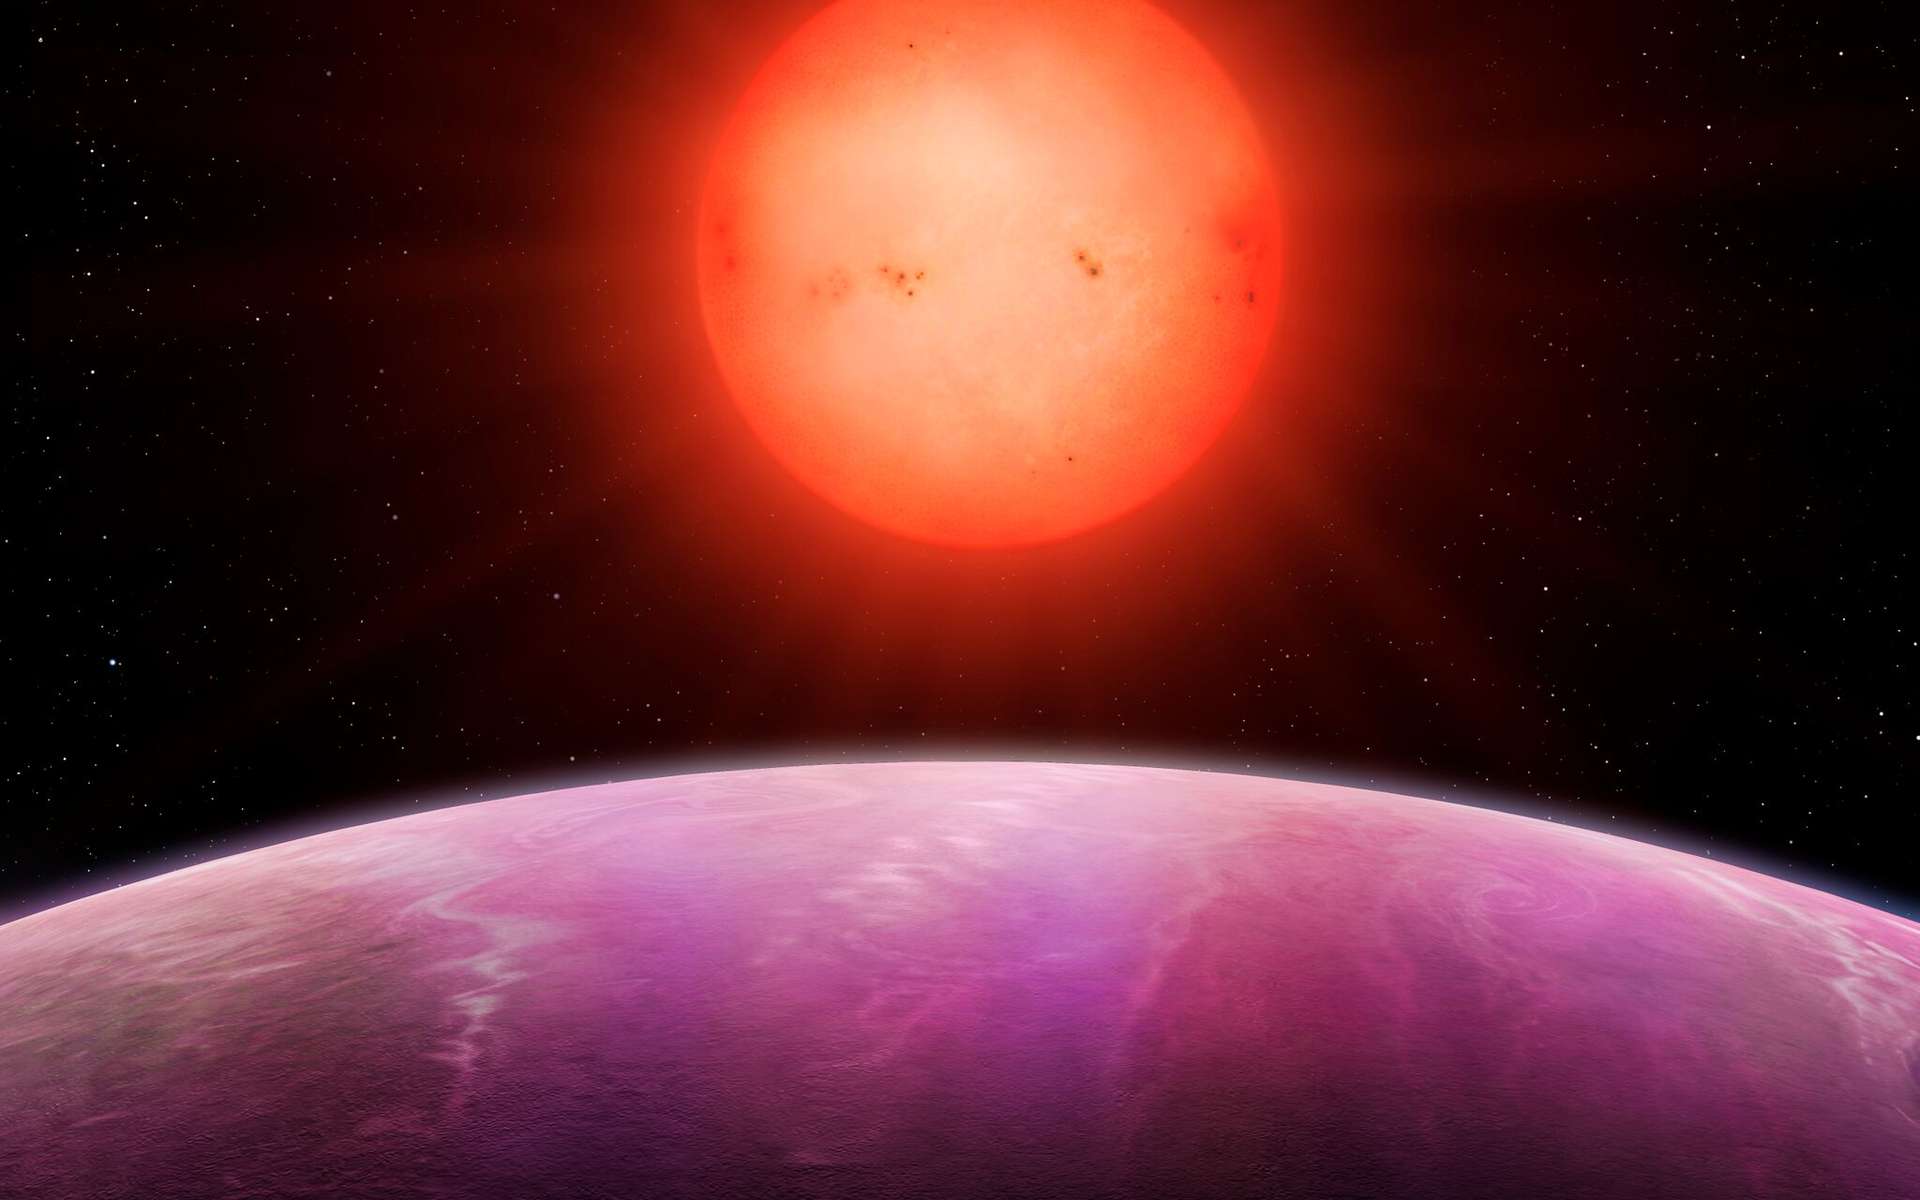 Une planète monstre a été découverte. Ici, une vue d'artiste de l'exoplanète NGTS-1b autour de sa naine rouge de type M. © Mark Garlick, University of Warwick